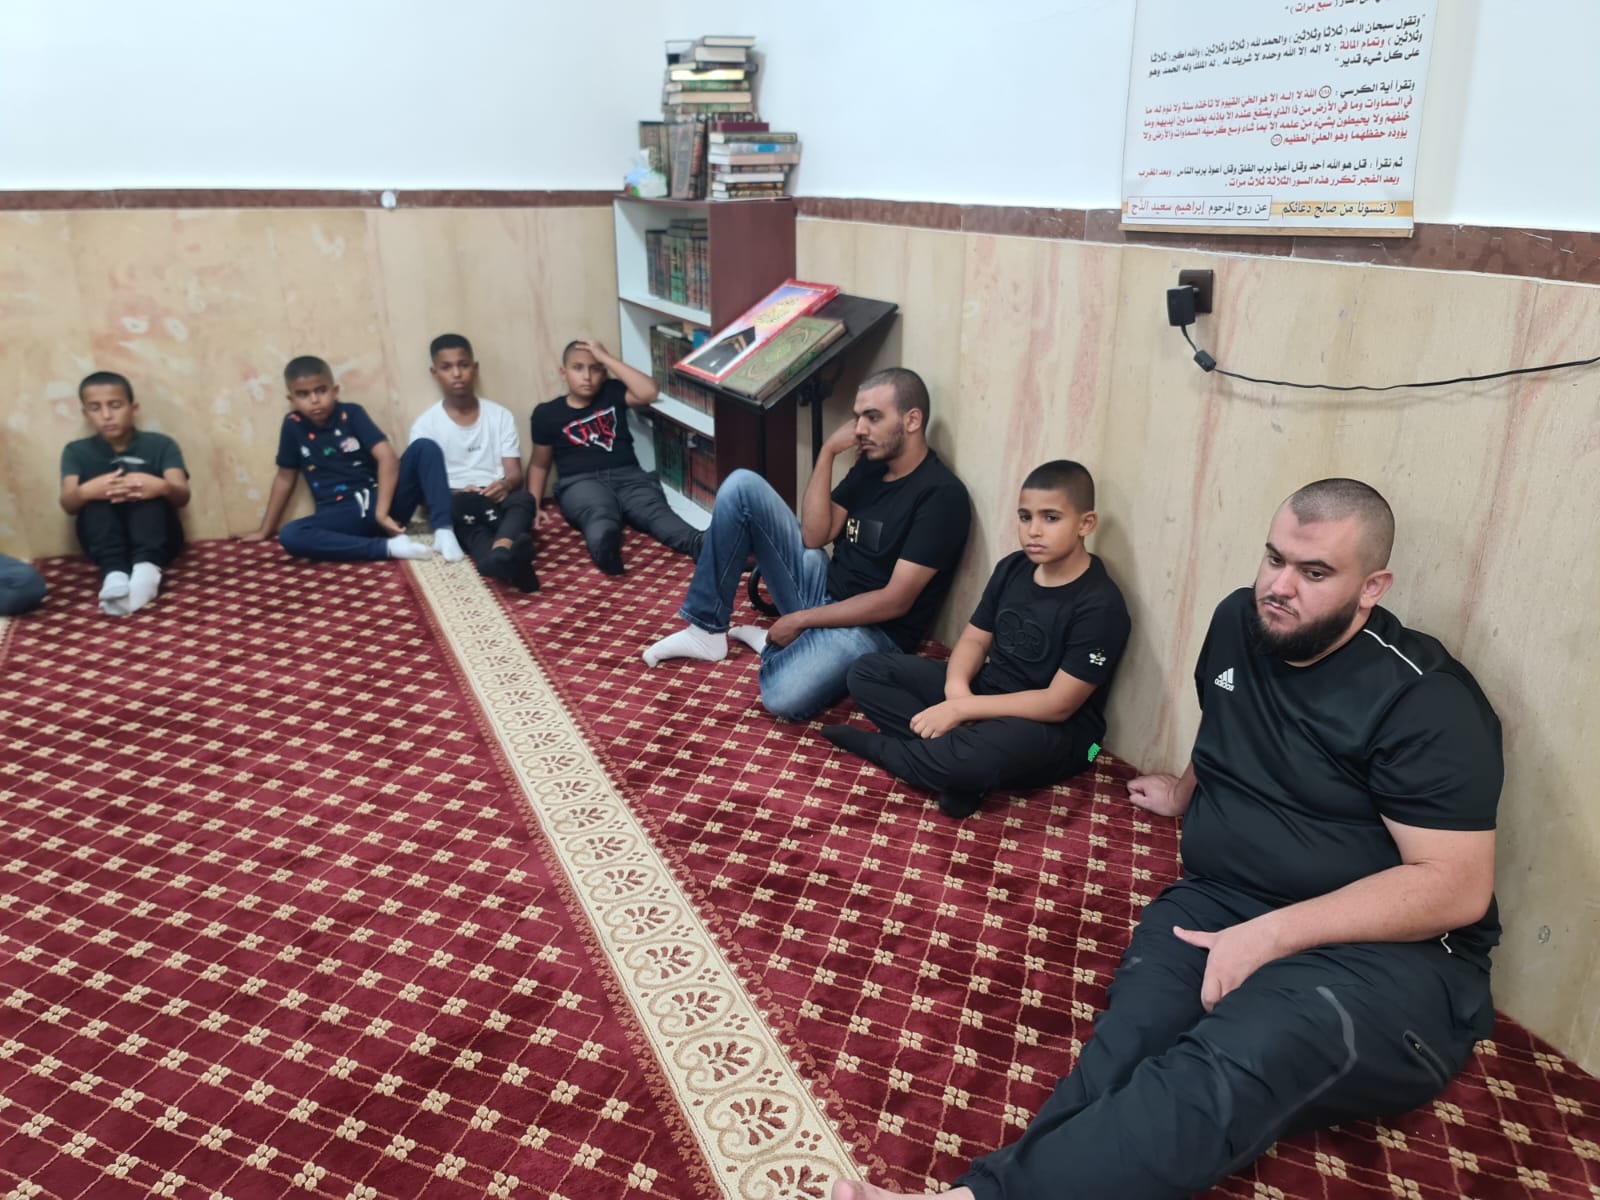 يافا: الشيخ محمد محاميد يحل ضيفا على مجالس النور في مسجد العجمي